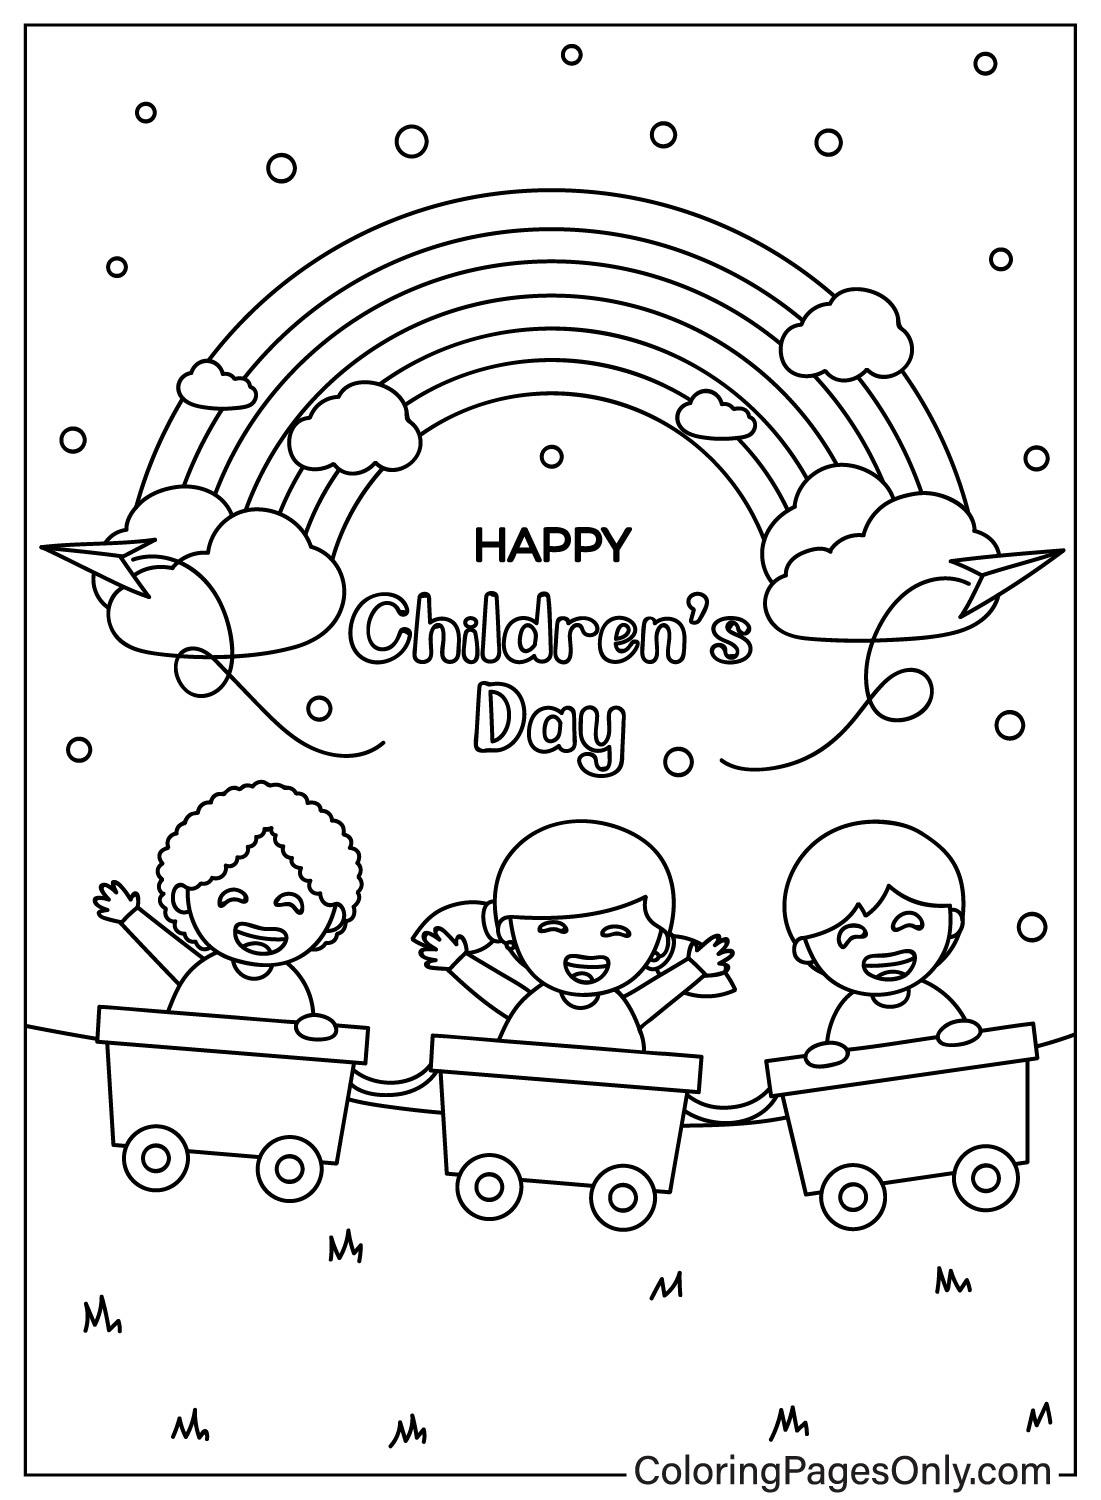 Three Happy Children Sitting in a Rickshaw from Children's Day